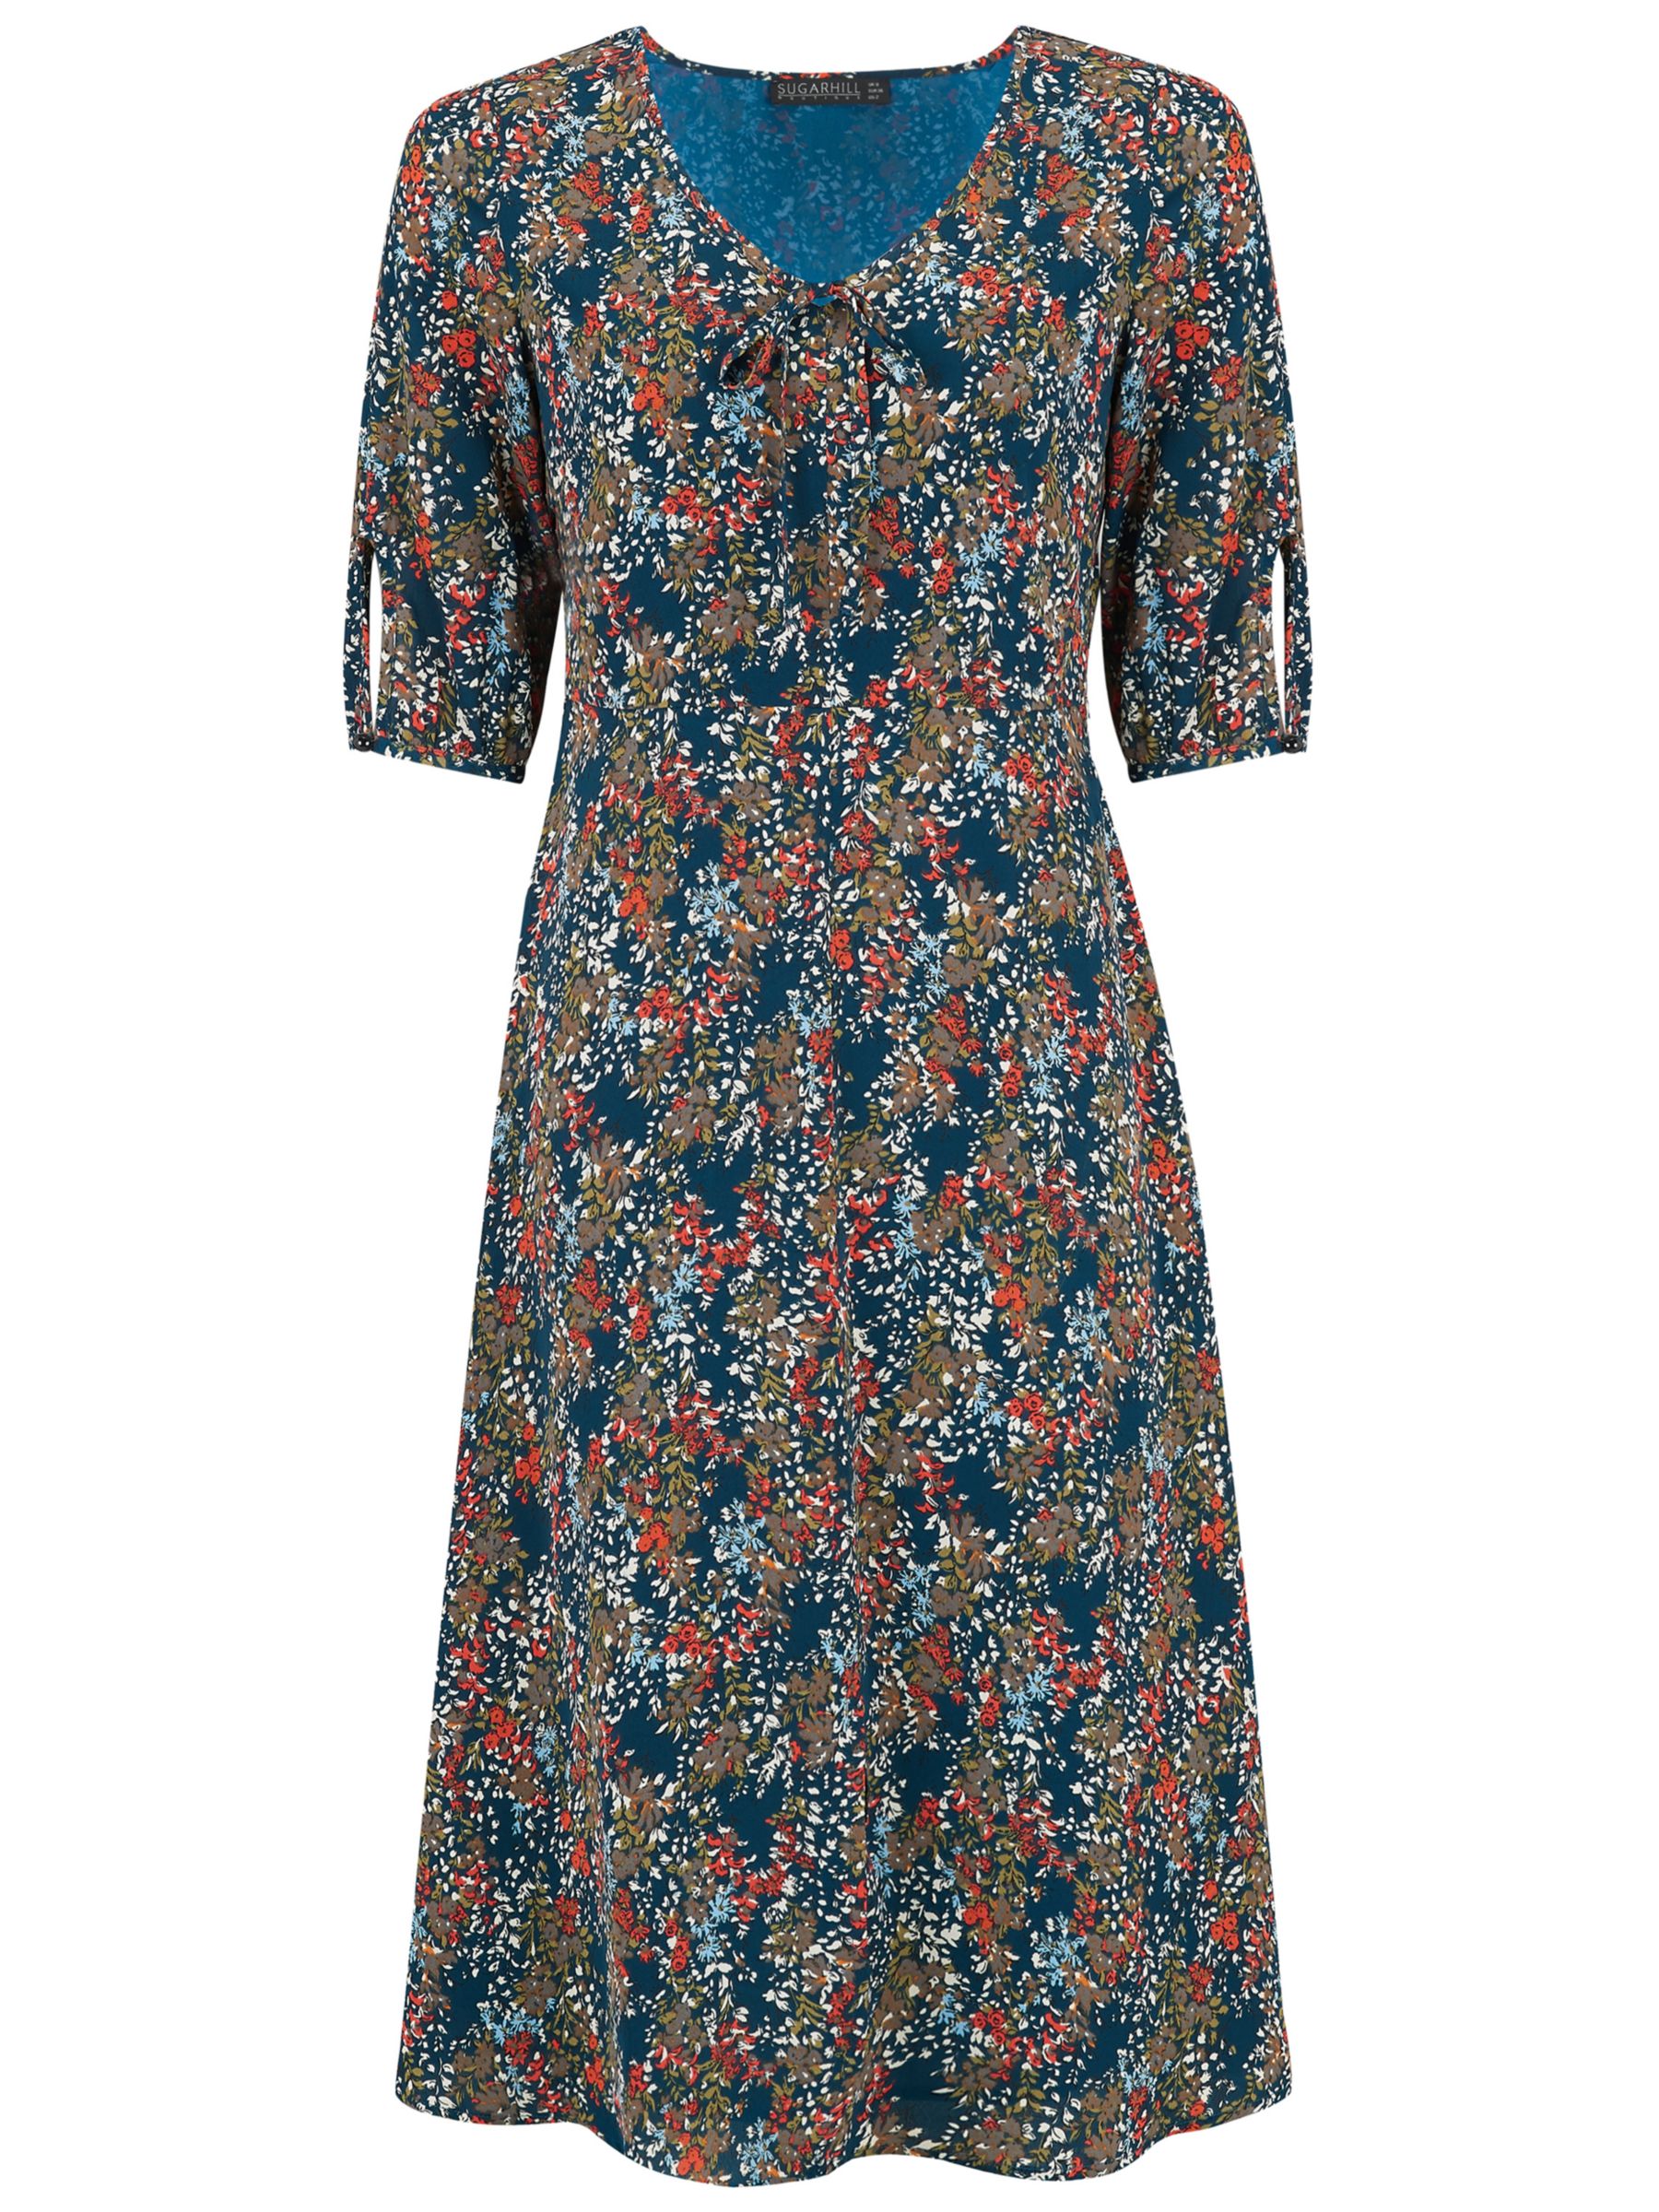 Sugarhill Brighton Alice Floral Midi Dress, Teal/Multi